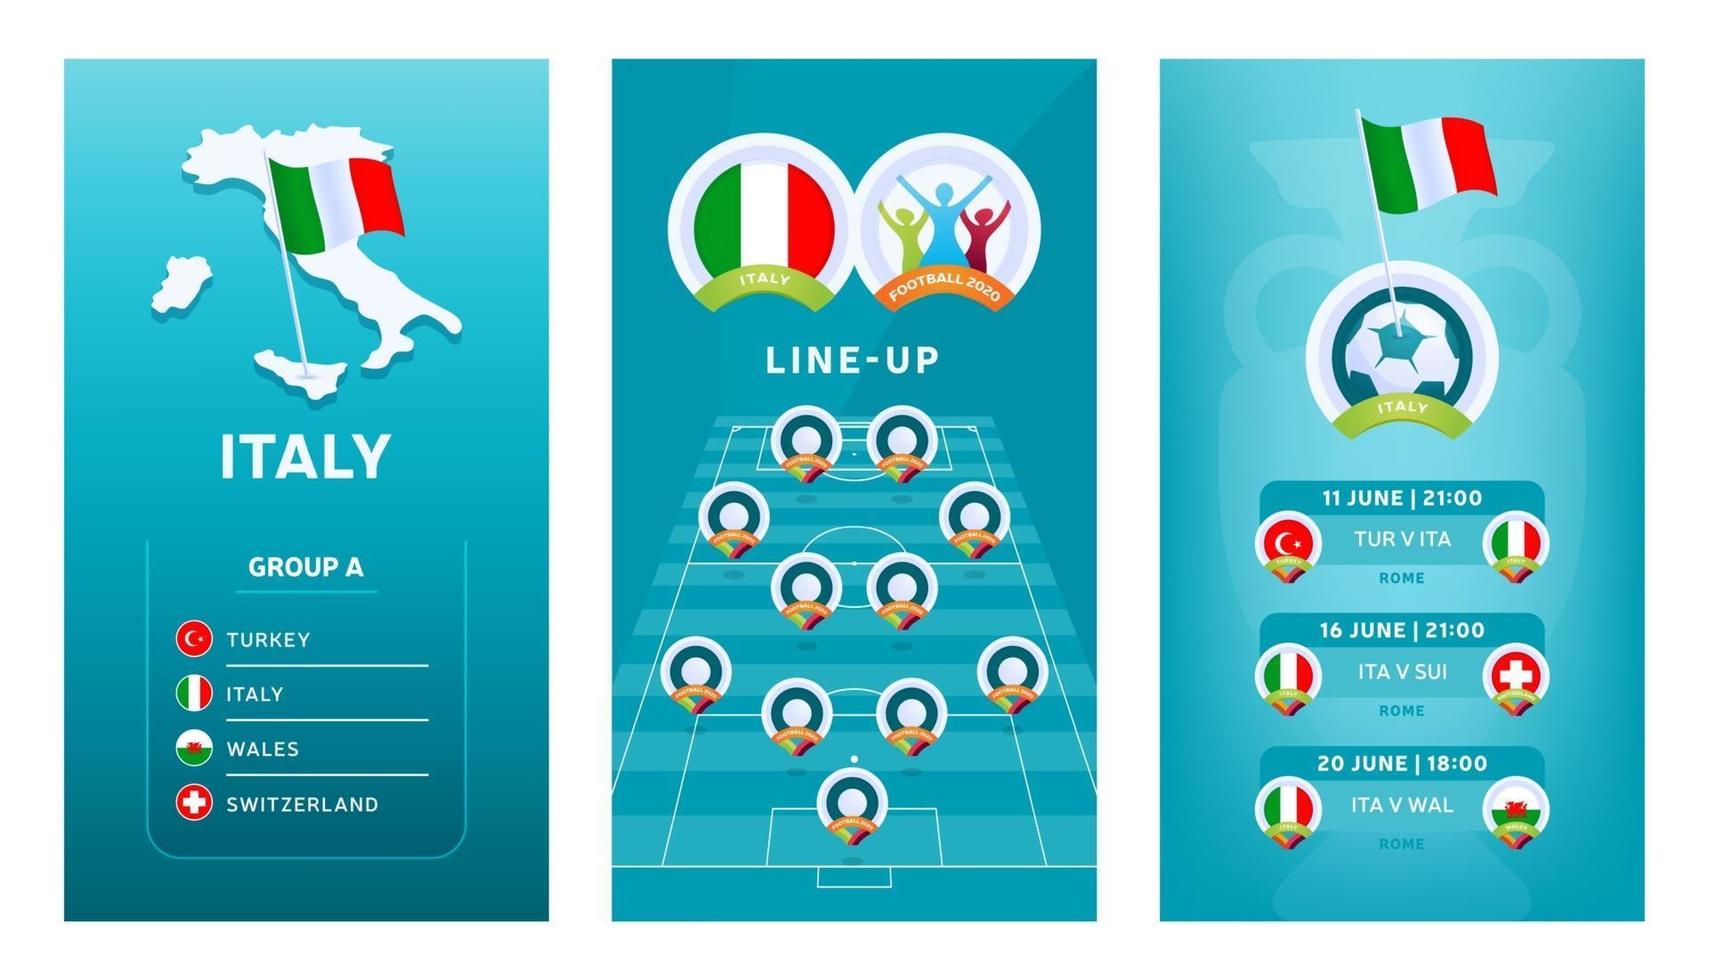 europeisk fotboll vertikal banner för 2020 2020 för sociala medier. Italien gruppera en banner med isometrisk karta, pin-flagga, matchschema och uppställning på fotbollsplan vektor